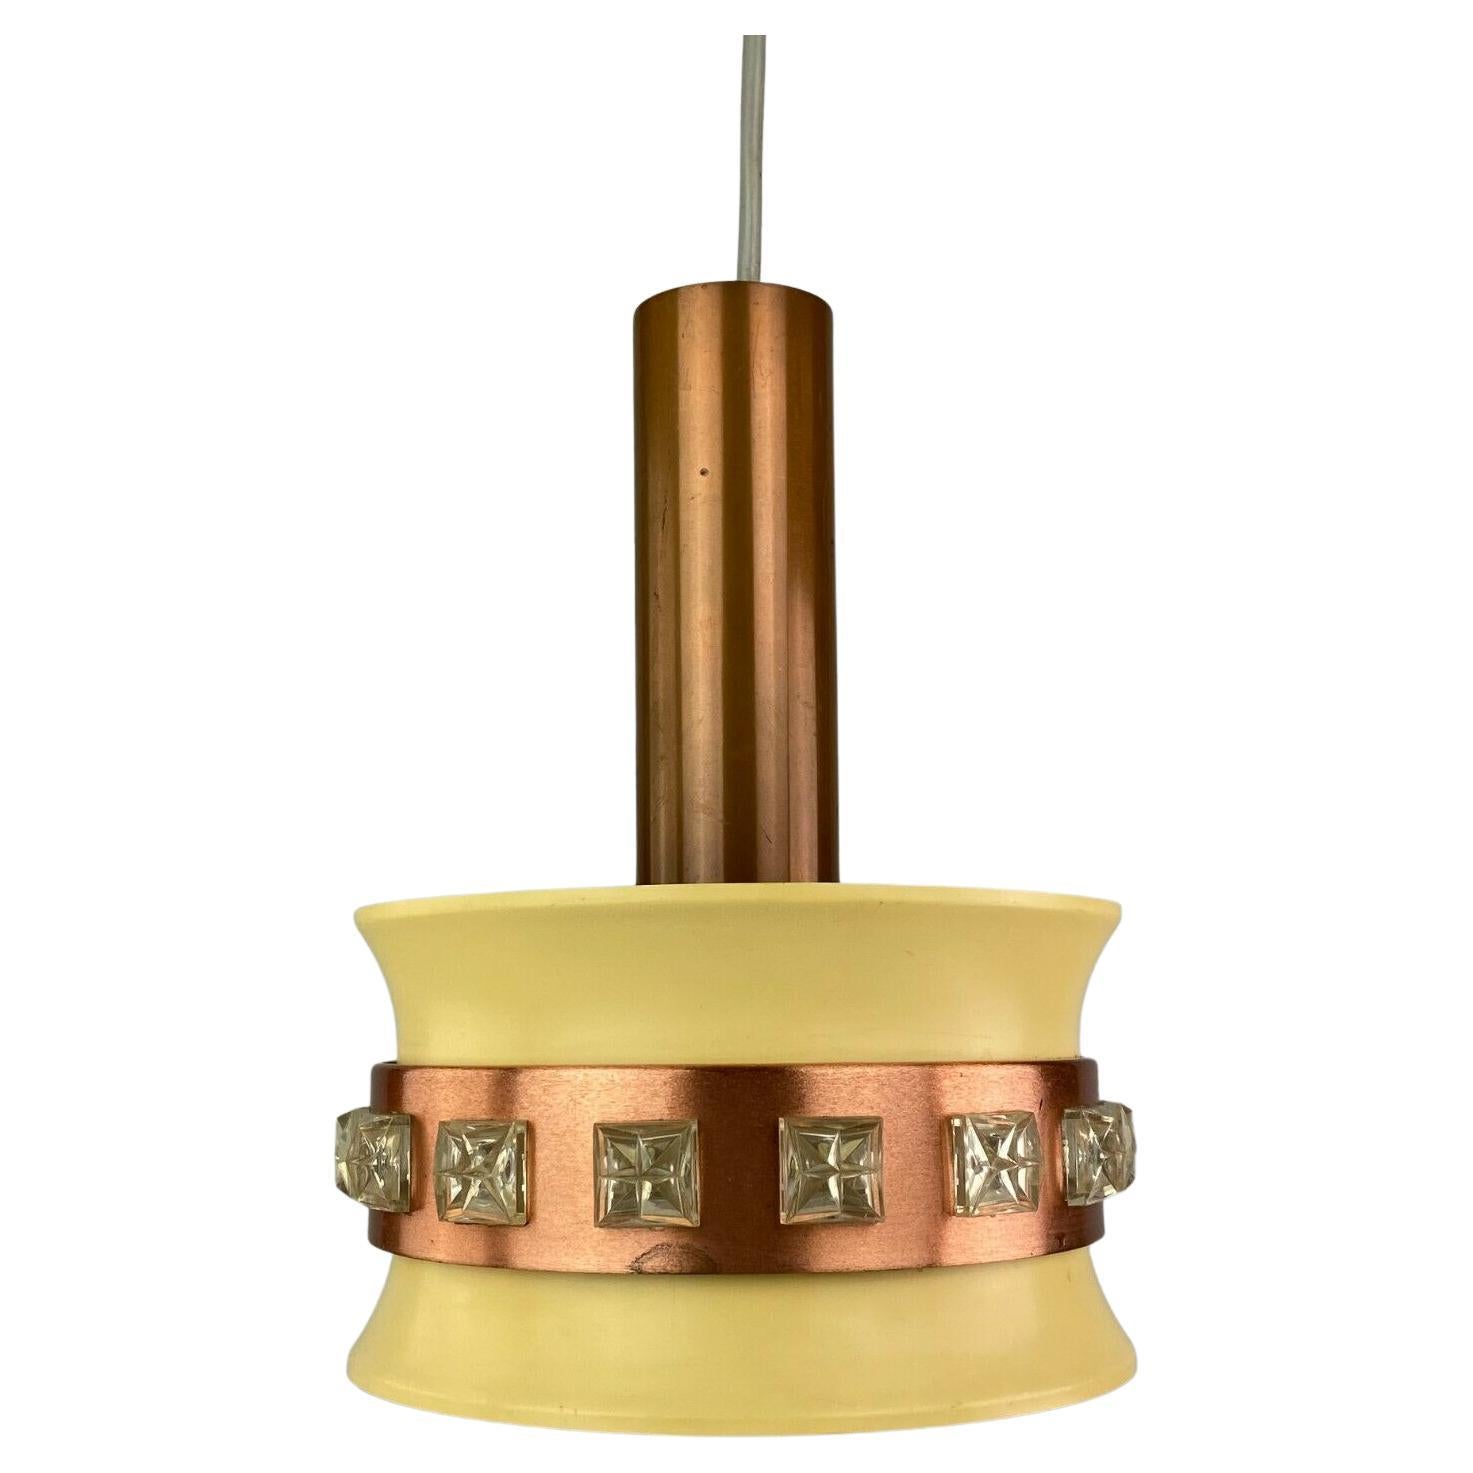 Lampe suspendue des années 70 Lampe de plafond en métal Design Space Age VEB 60s